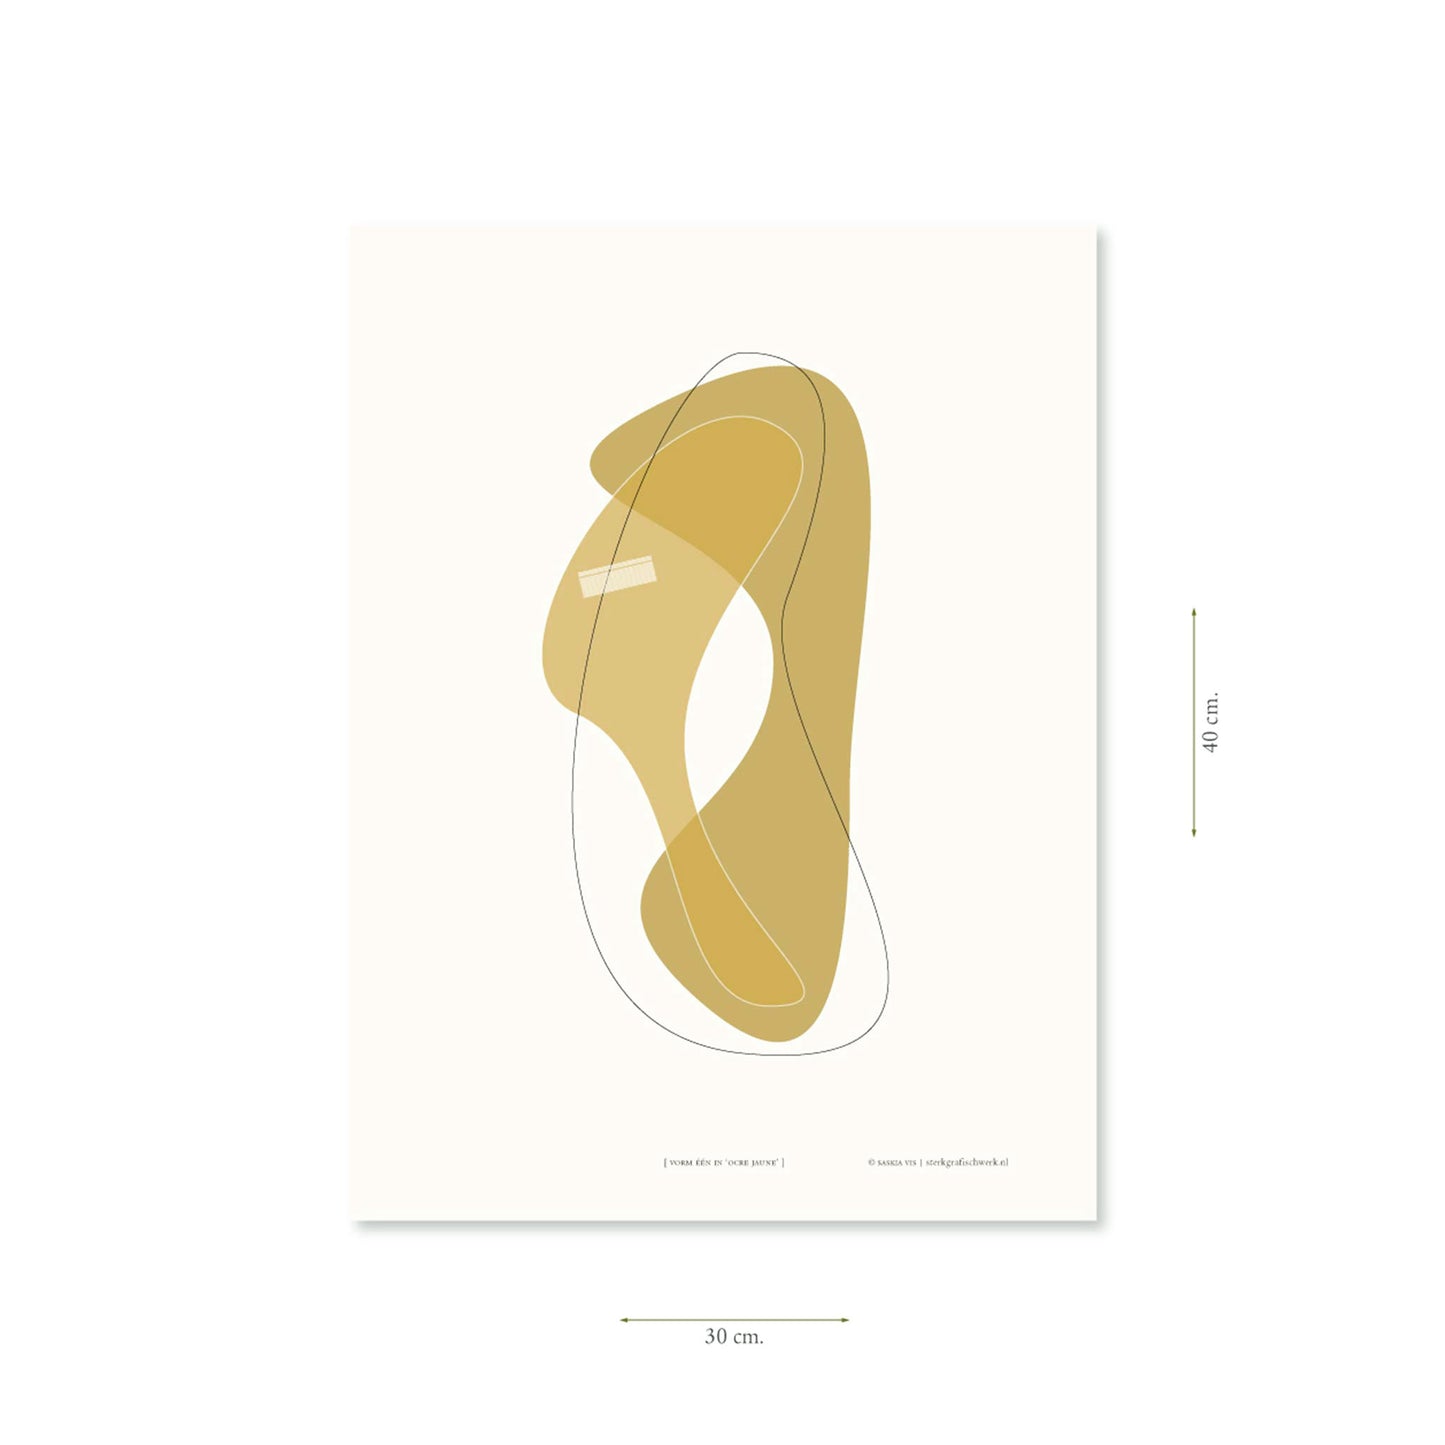 Productafbeelding poster "vorm één in ocre jaune" met aanduiding van het formaat erop weergegeven 30 x 40 cm